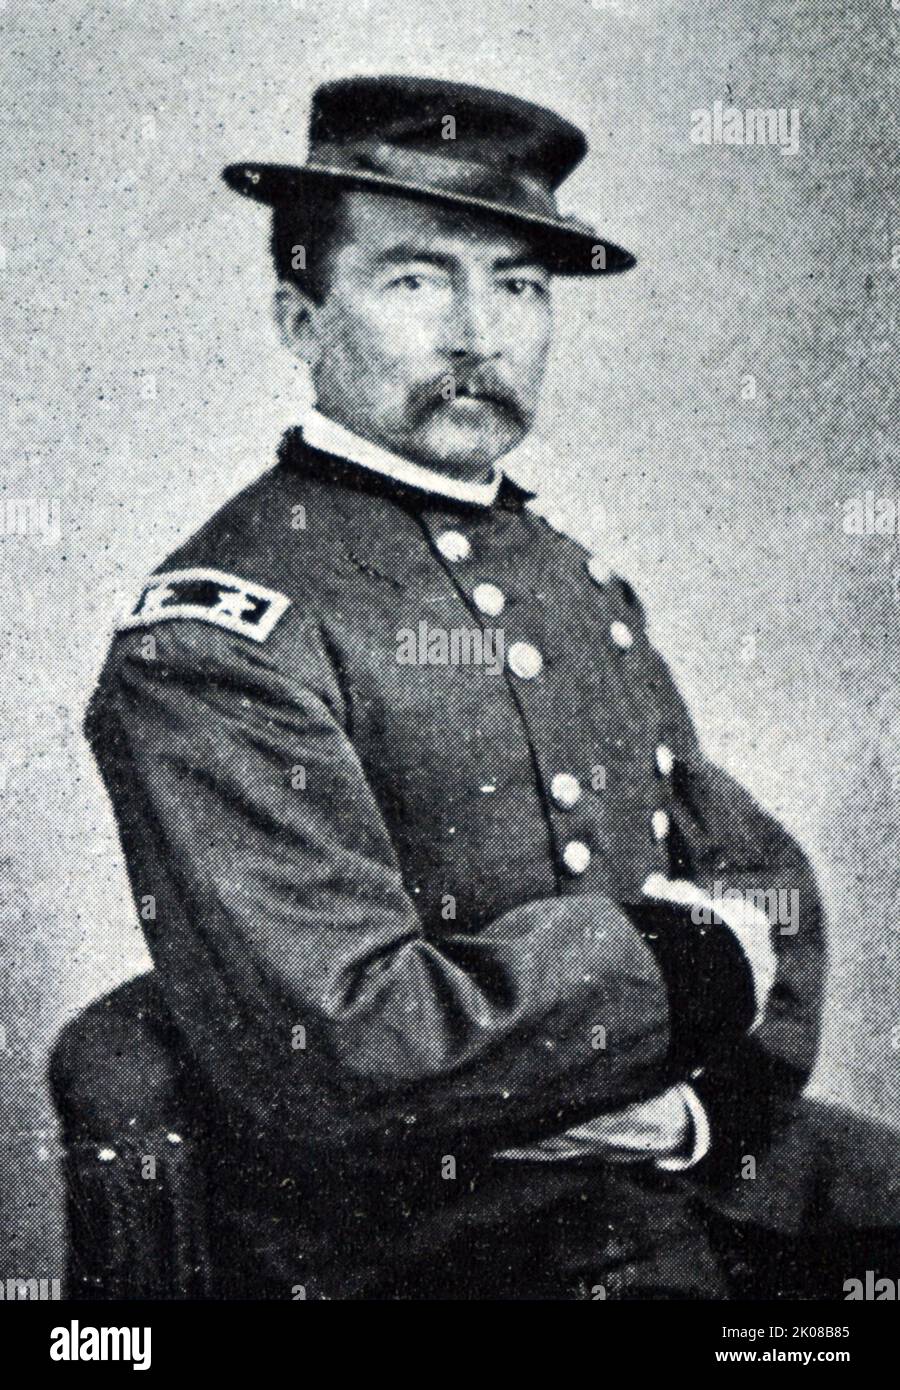 Général de l'armée Philip Henry Sheridan (6 mars 1831 - 5 août 1888) est un officier de carrière de l'armée des États-Unis et un général de l'Union dans la guerre civile américaine Banque D'Images